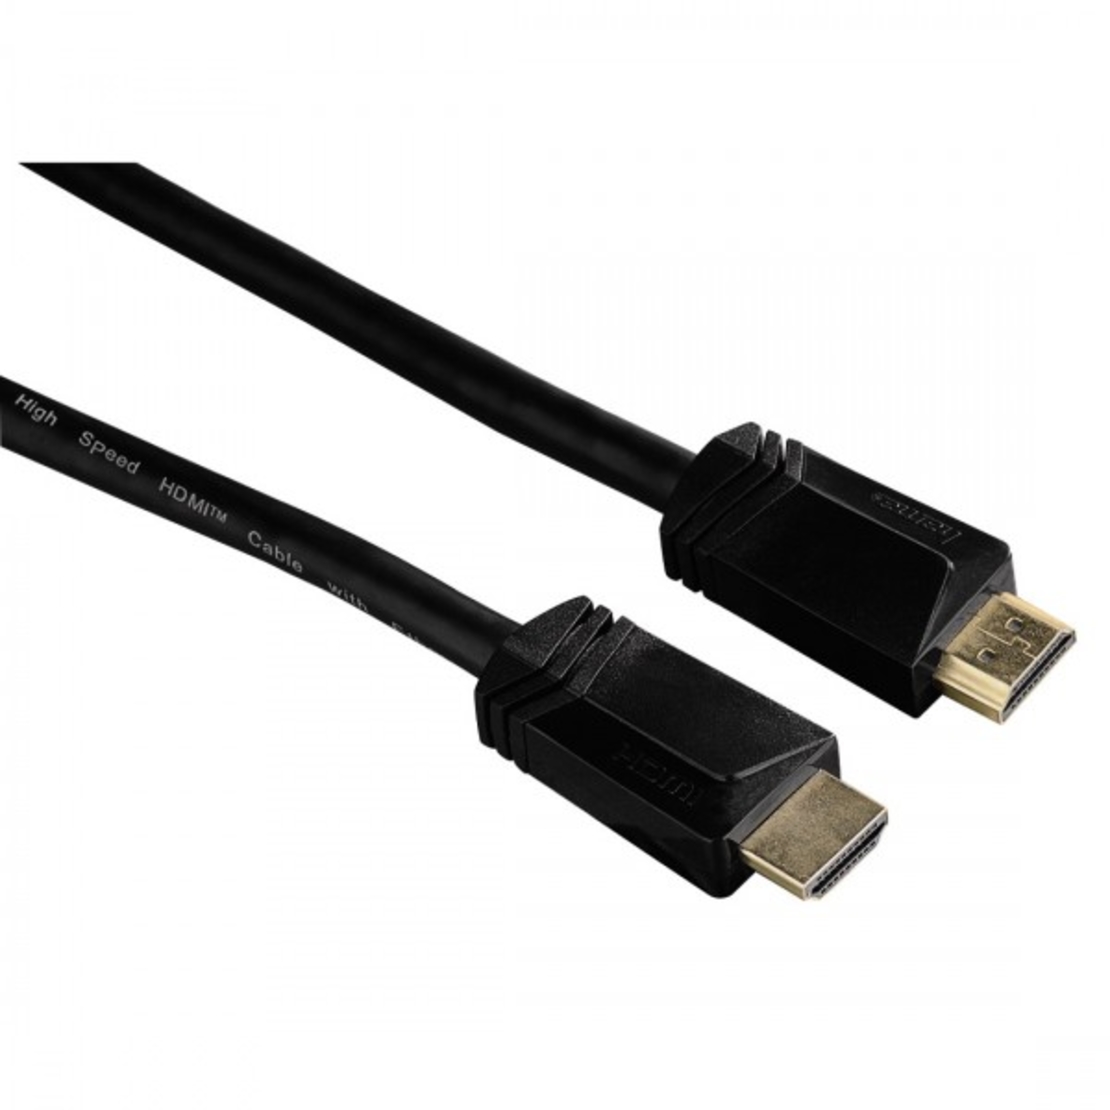 כבל HDMI איכותי באורך 1.5 מטר , תומך בהעברת 4K ותלת מימד לקבלת תמונה נקיה ומושלמת HAMA